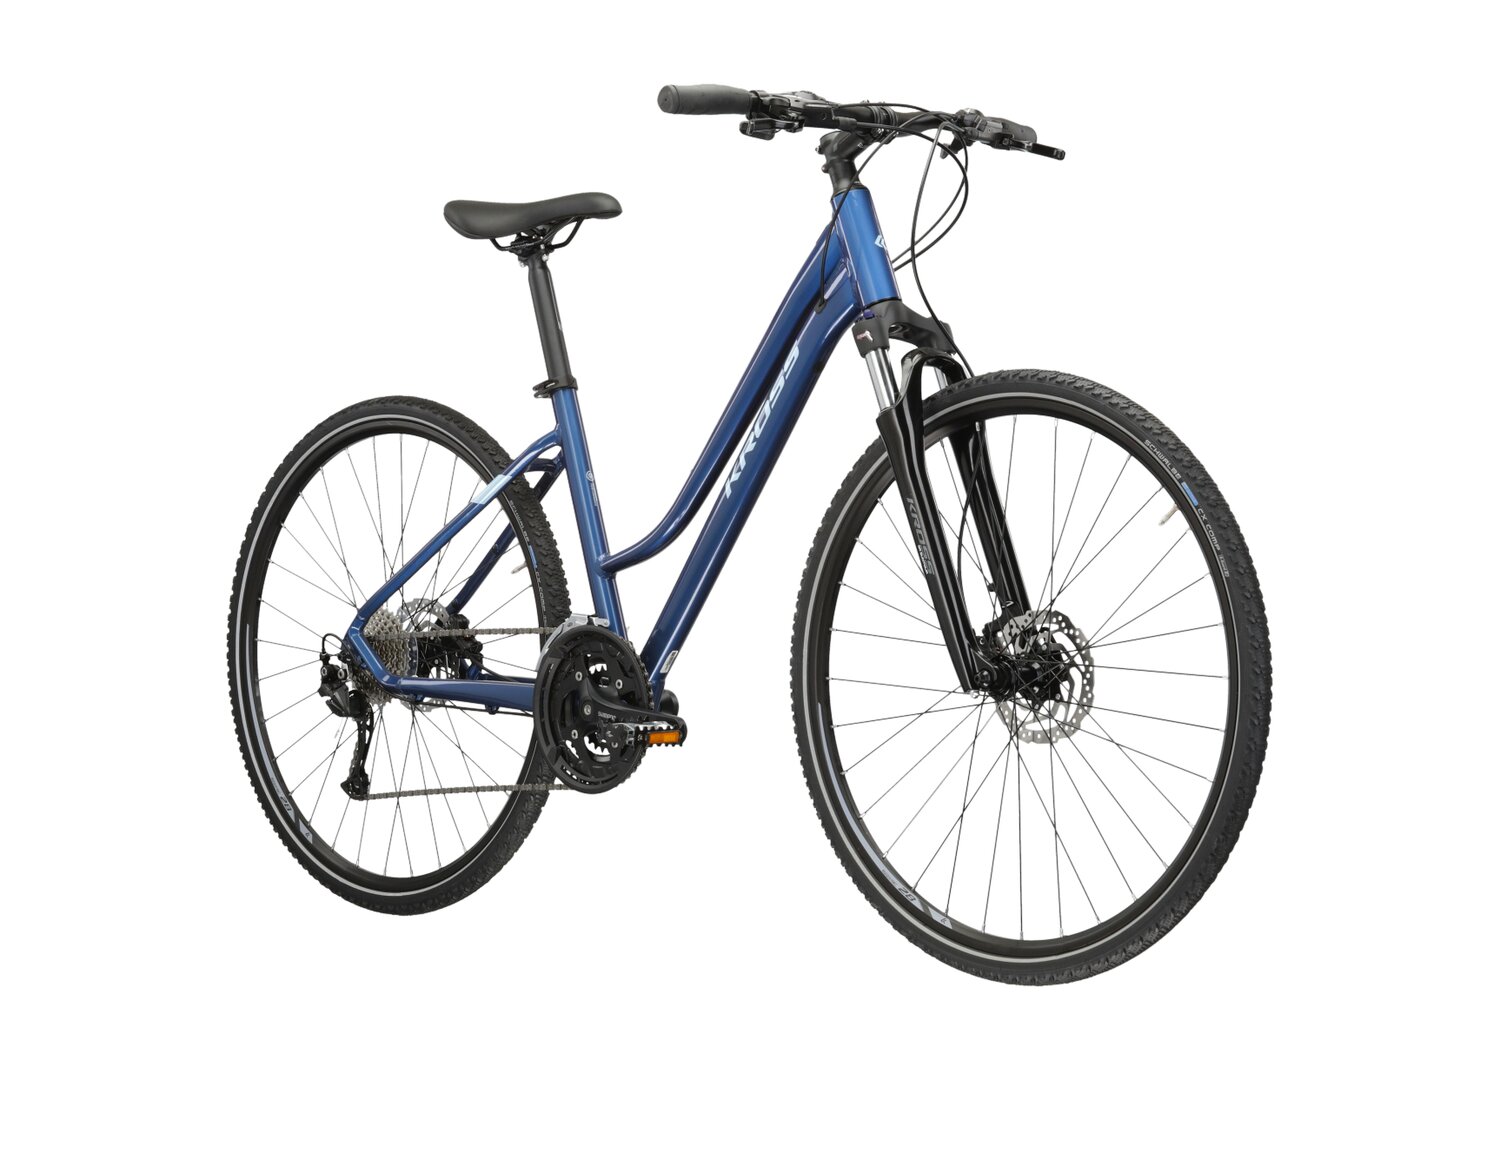  Rower crossowy damski KROSS Evado 6.0 na aluminiowej ramie w kolorze niebieskim wyposażony w osprzęt Shimano